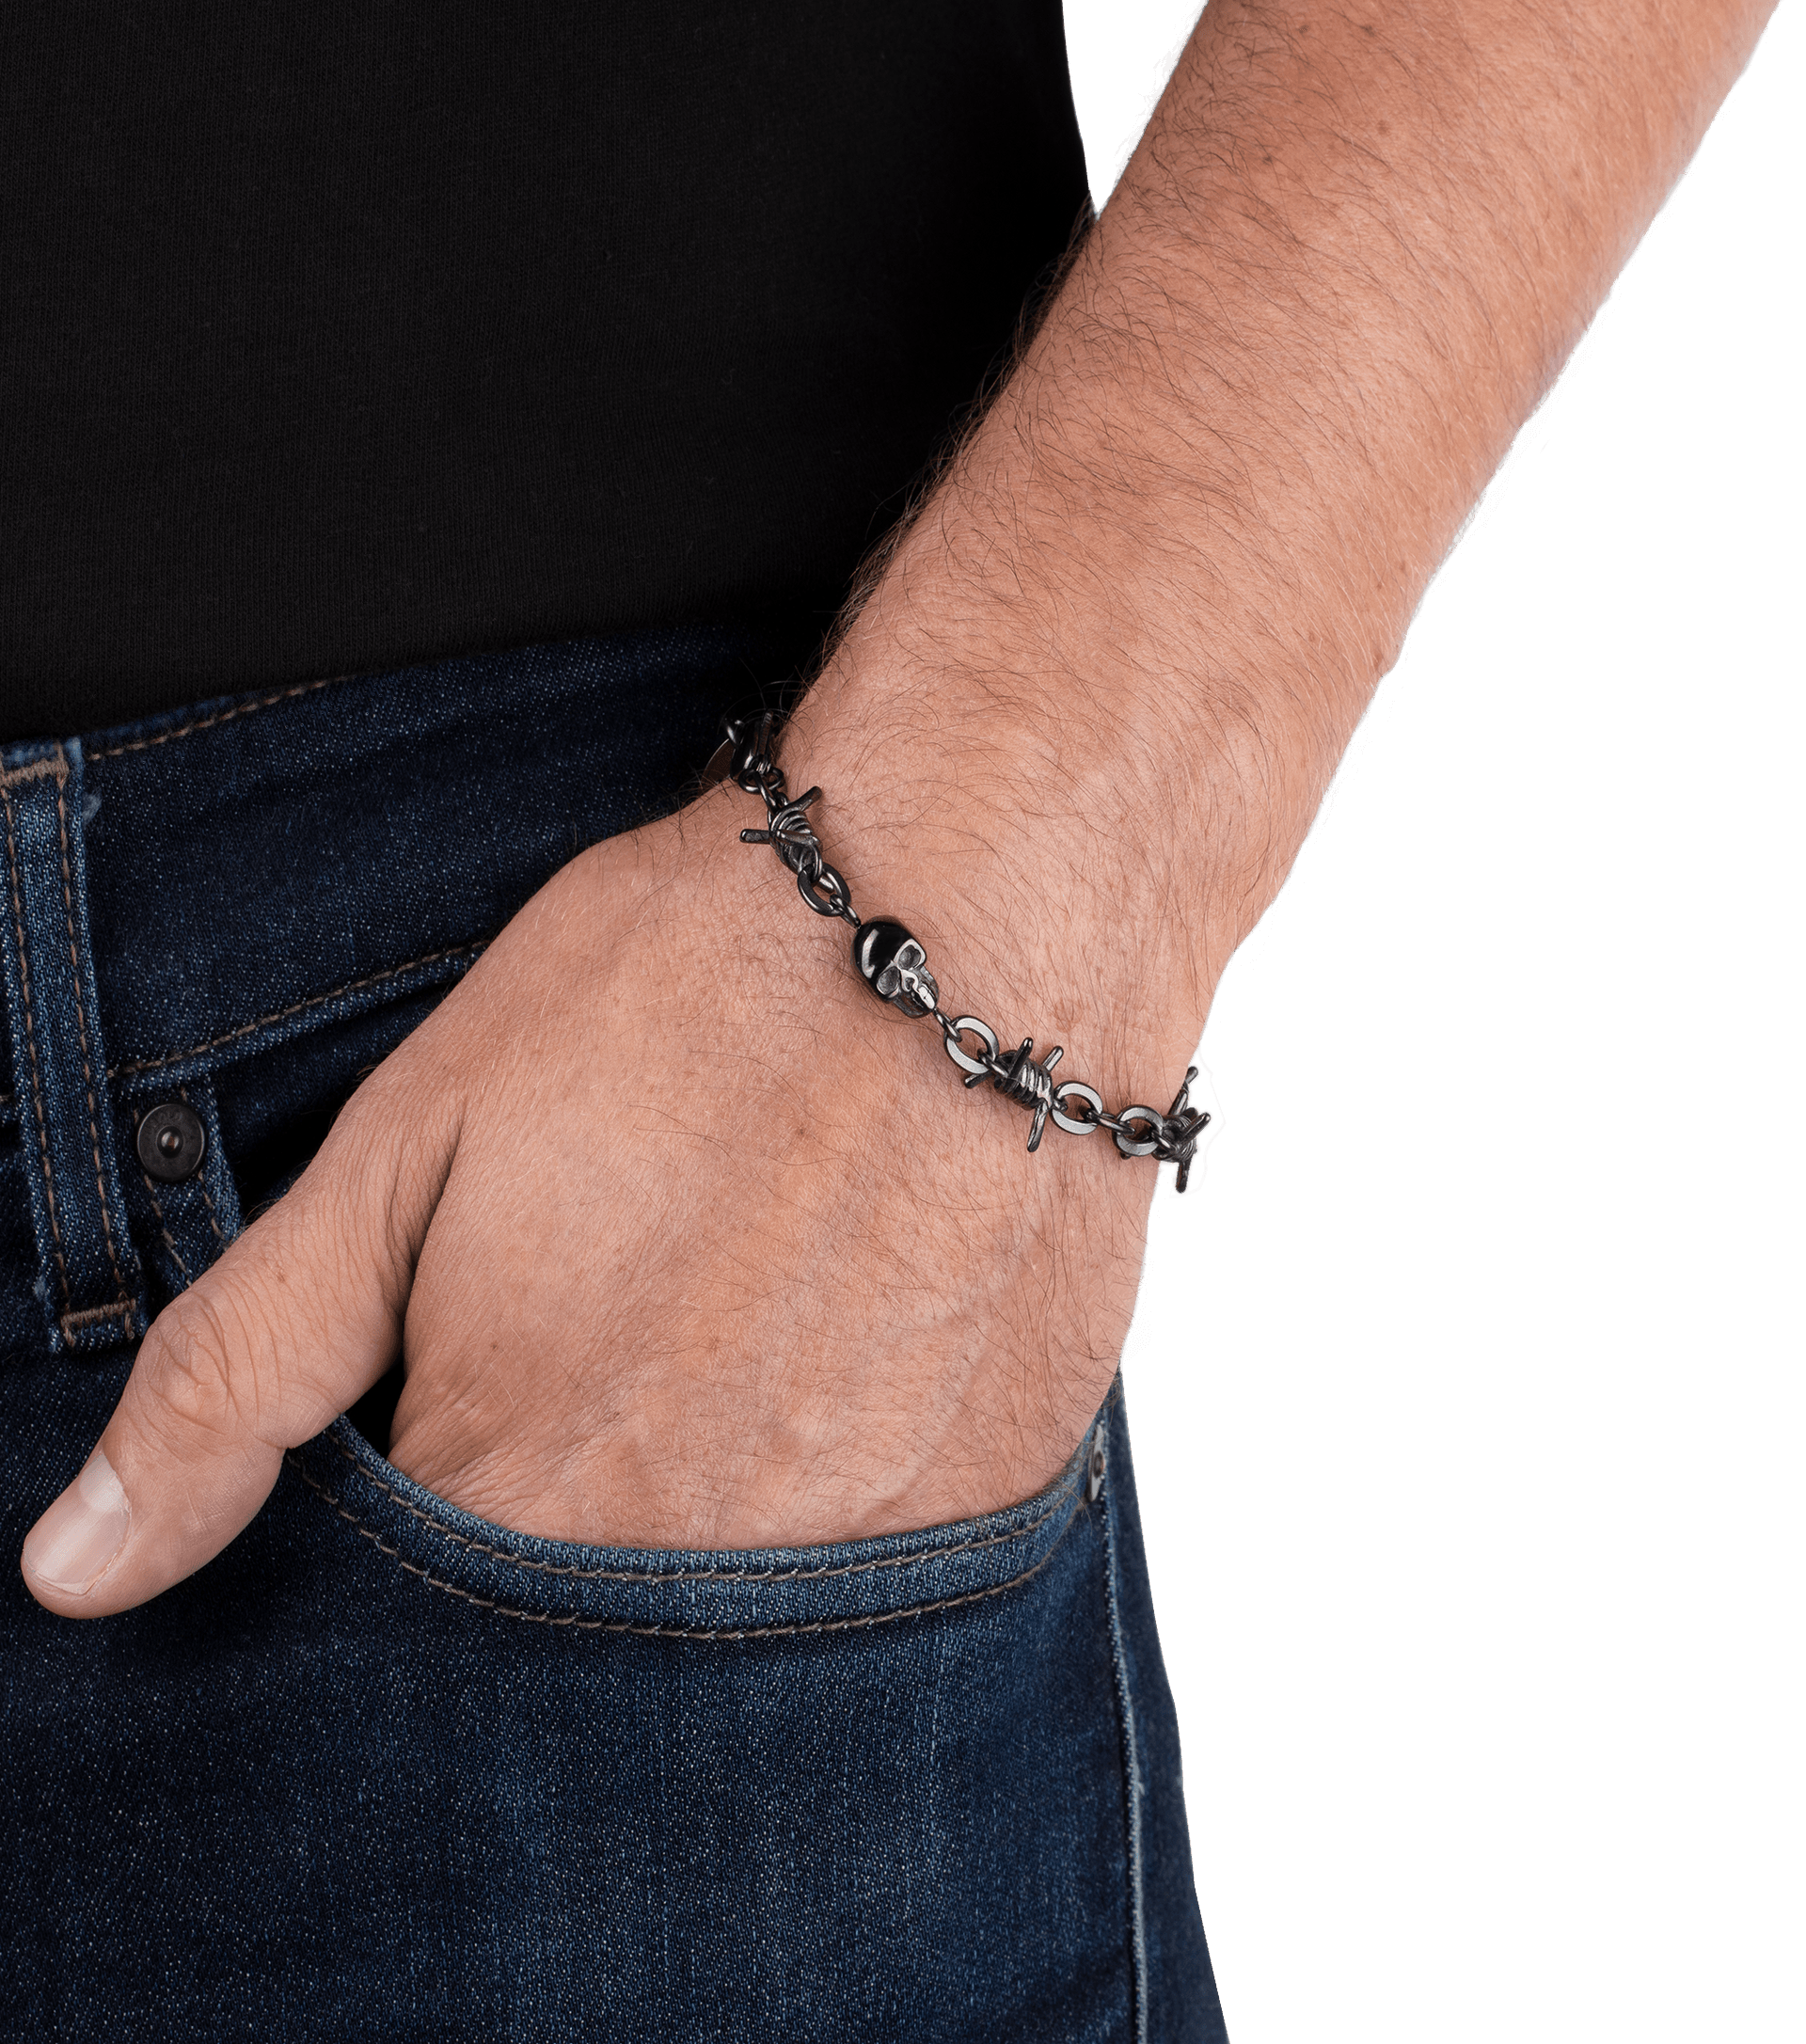 jewels Männer Police Police - Armband Von Für Barbedwire PEJGB2112301